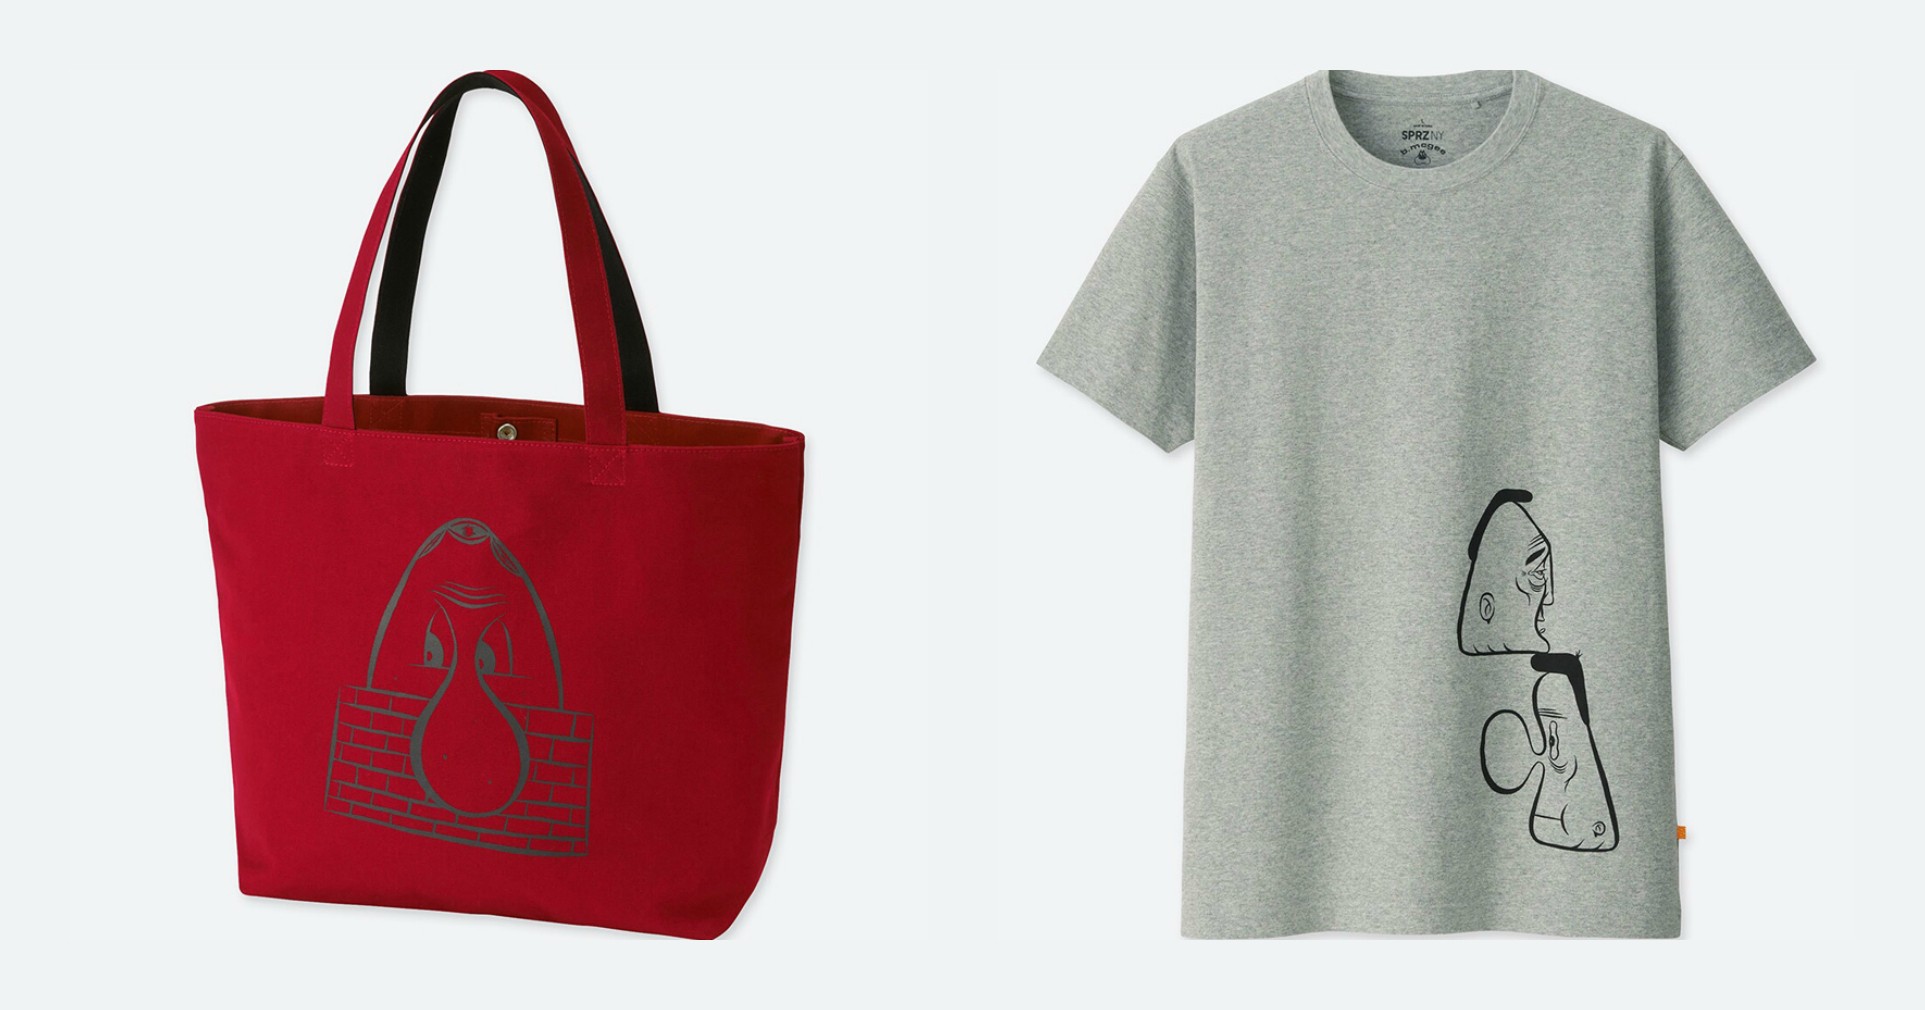 Uniqlo выпустили футболки и сумки вместе со стрит-арт художником Барри МакГи 